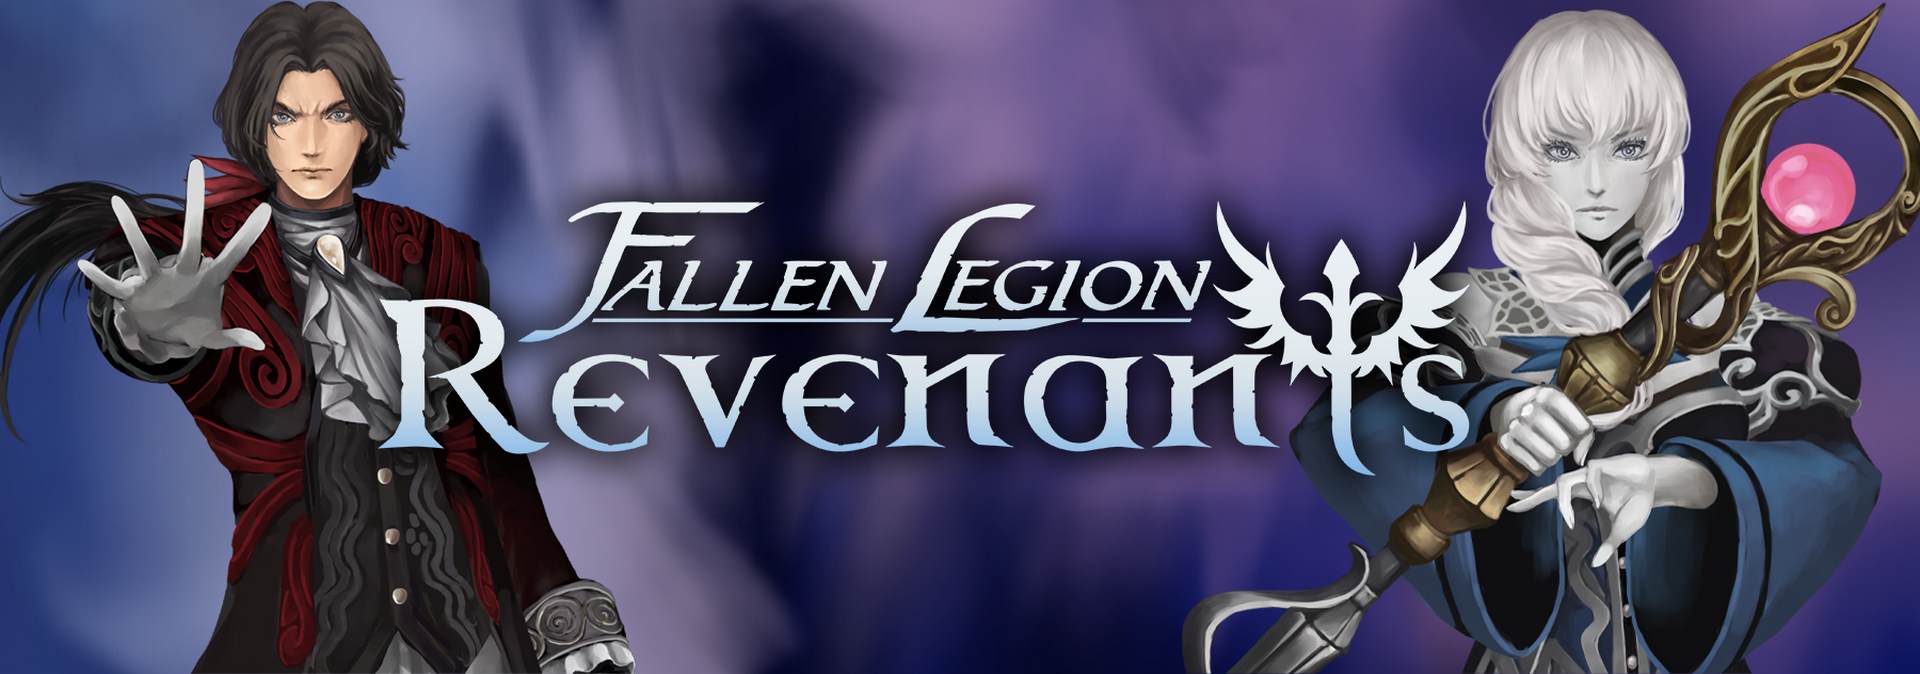 free for mac instal Fallen Legion Revenants